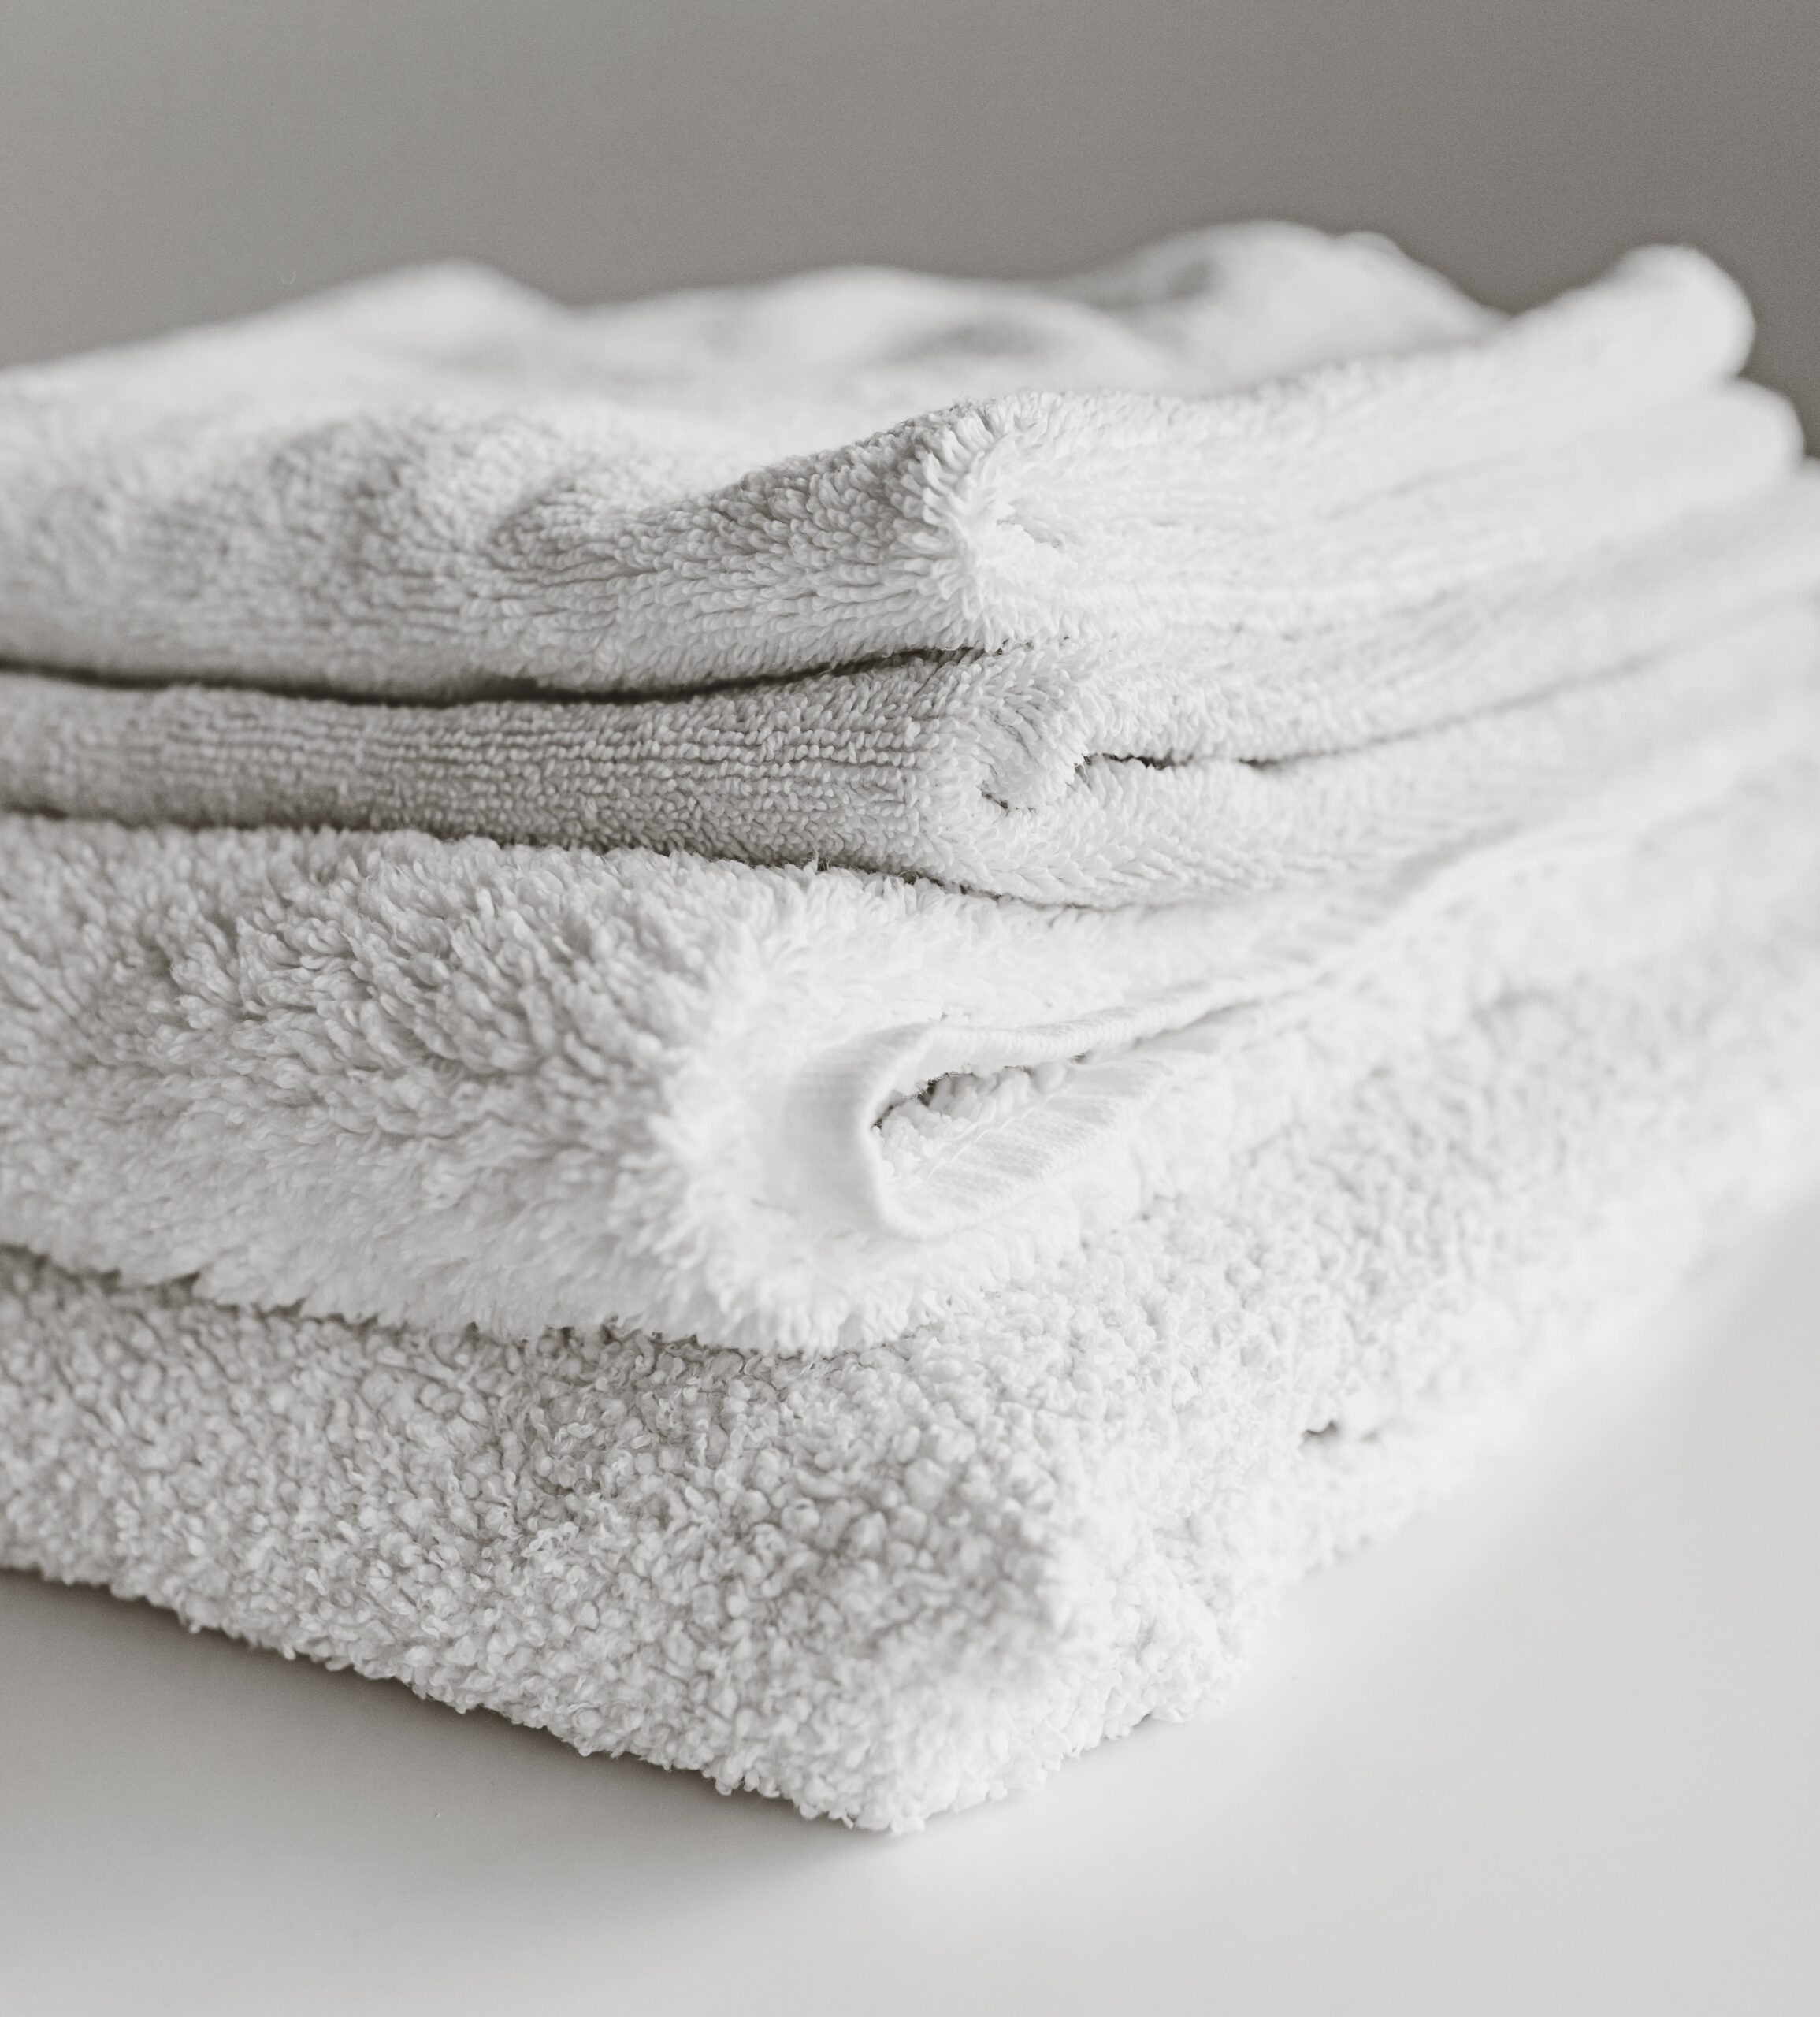 bath towels